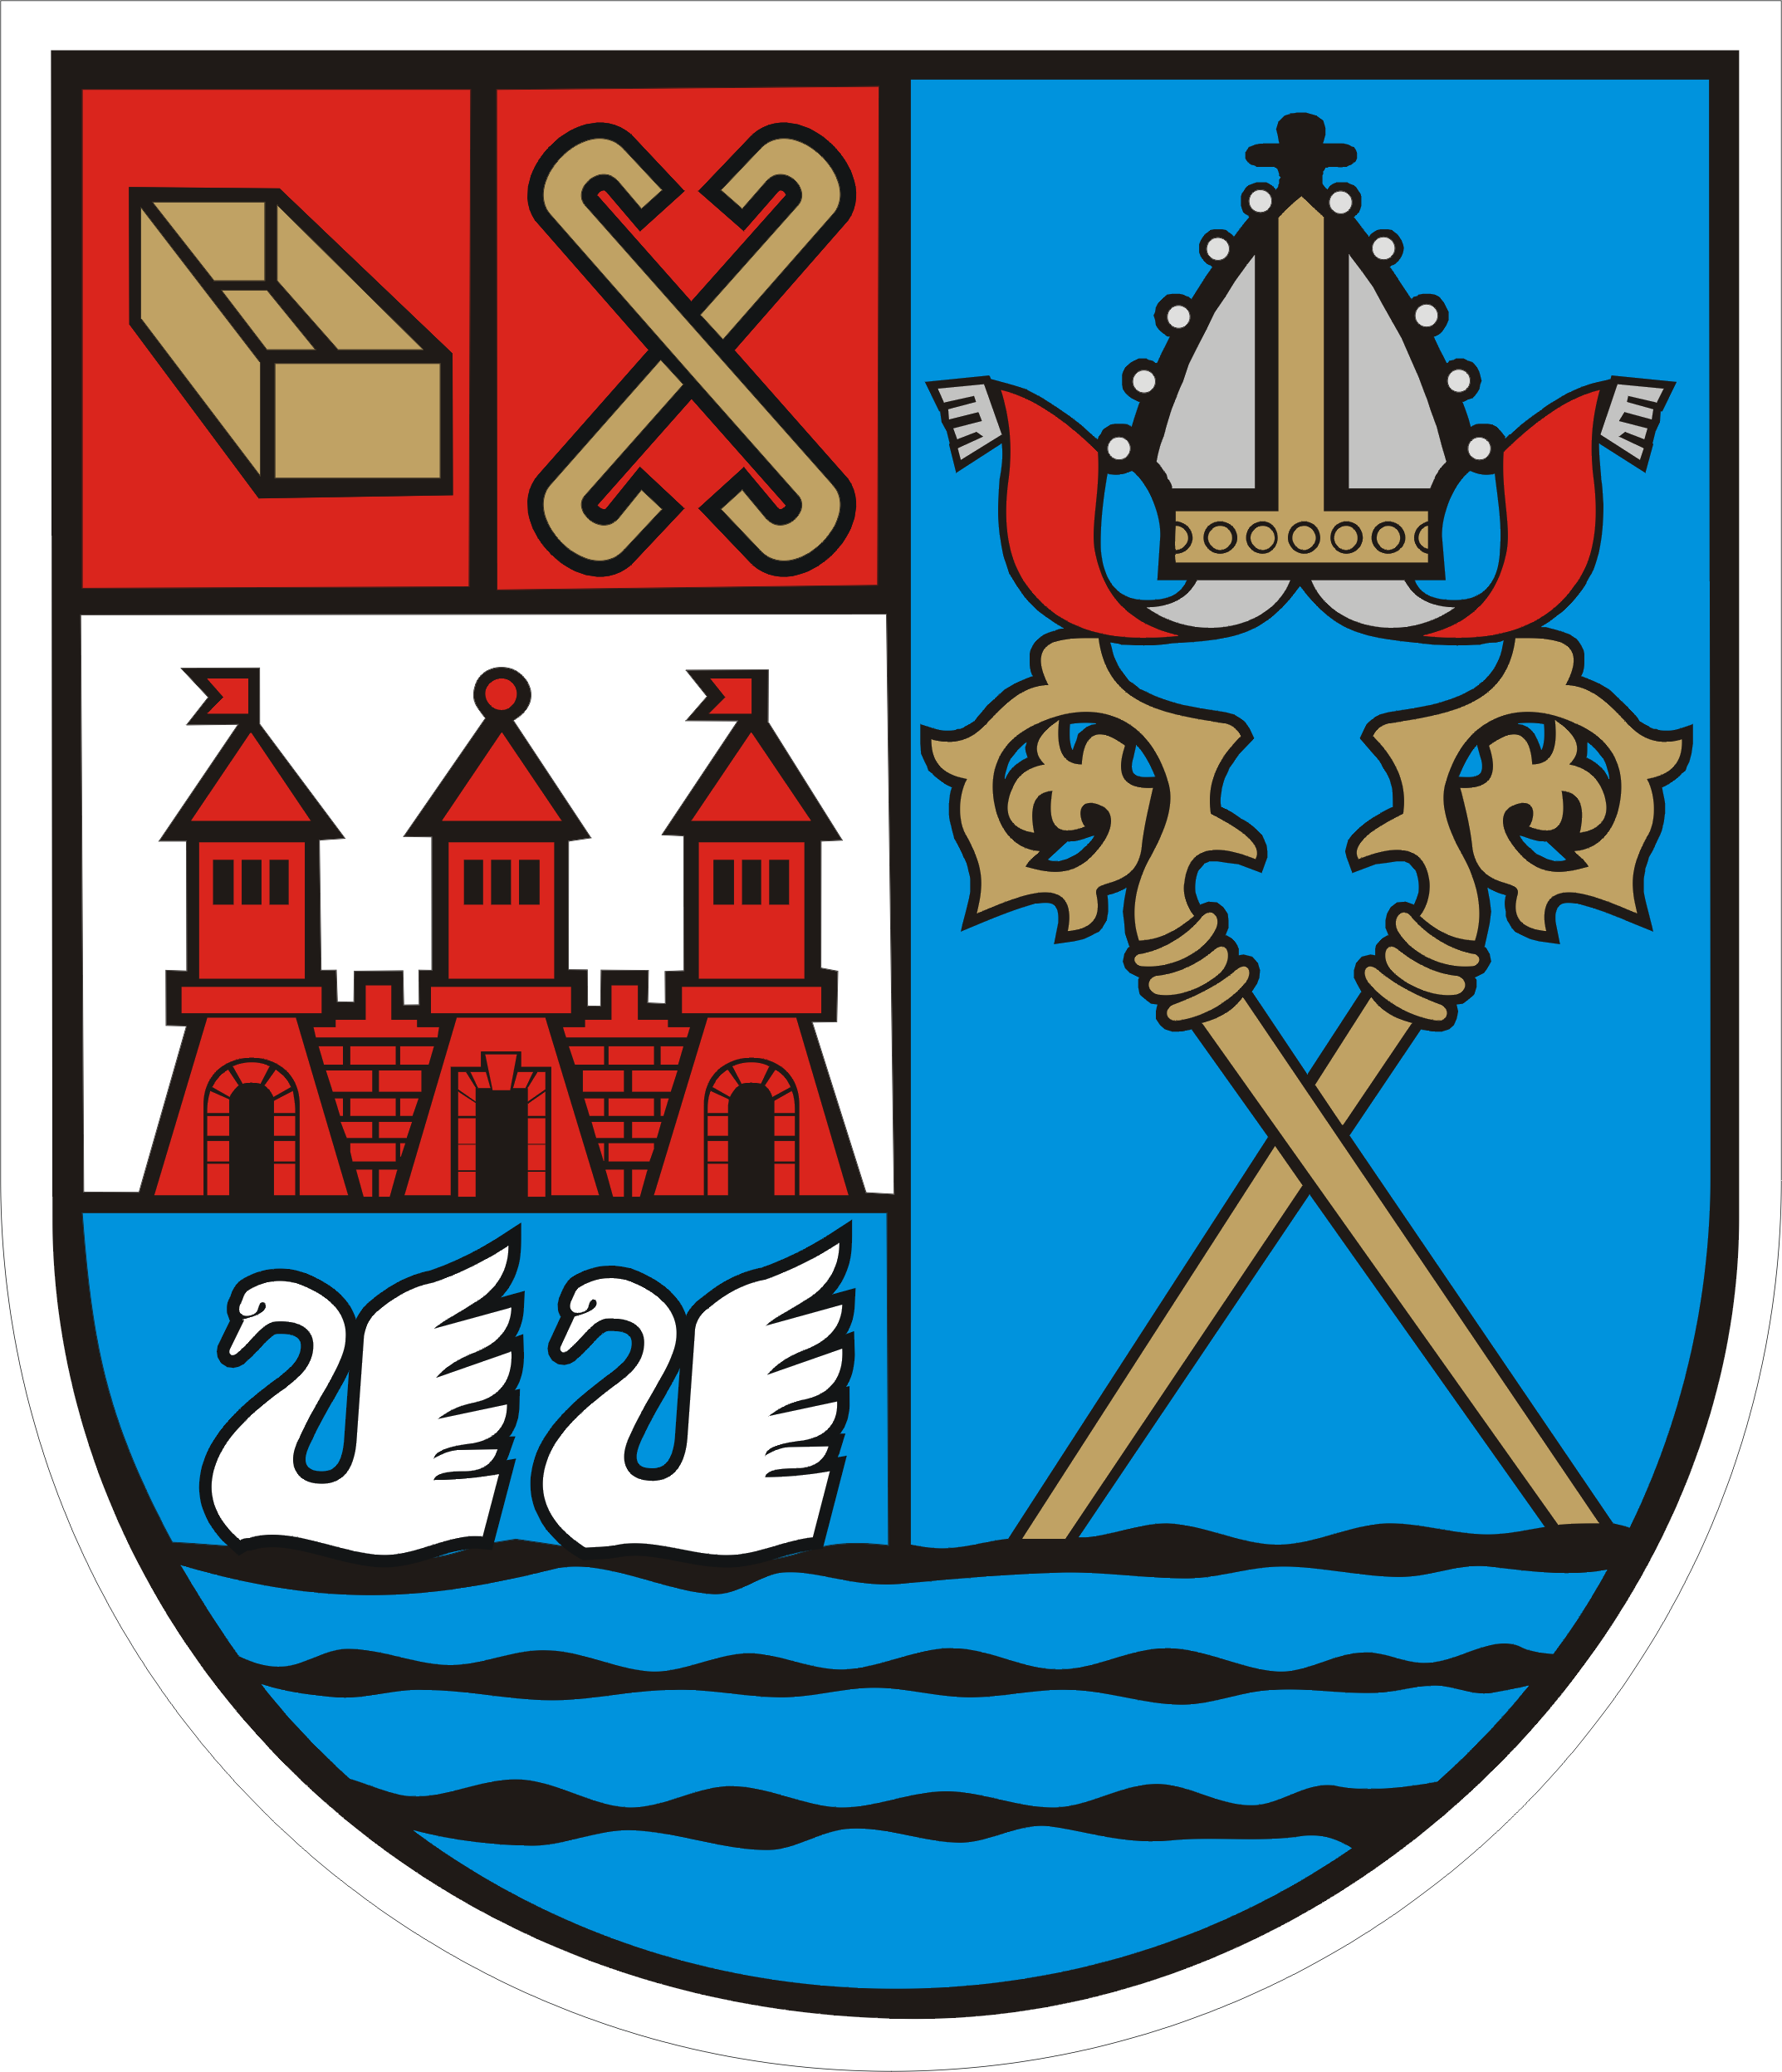 Urząd Miasta Kołobrzeg